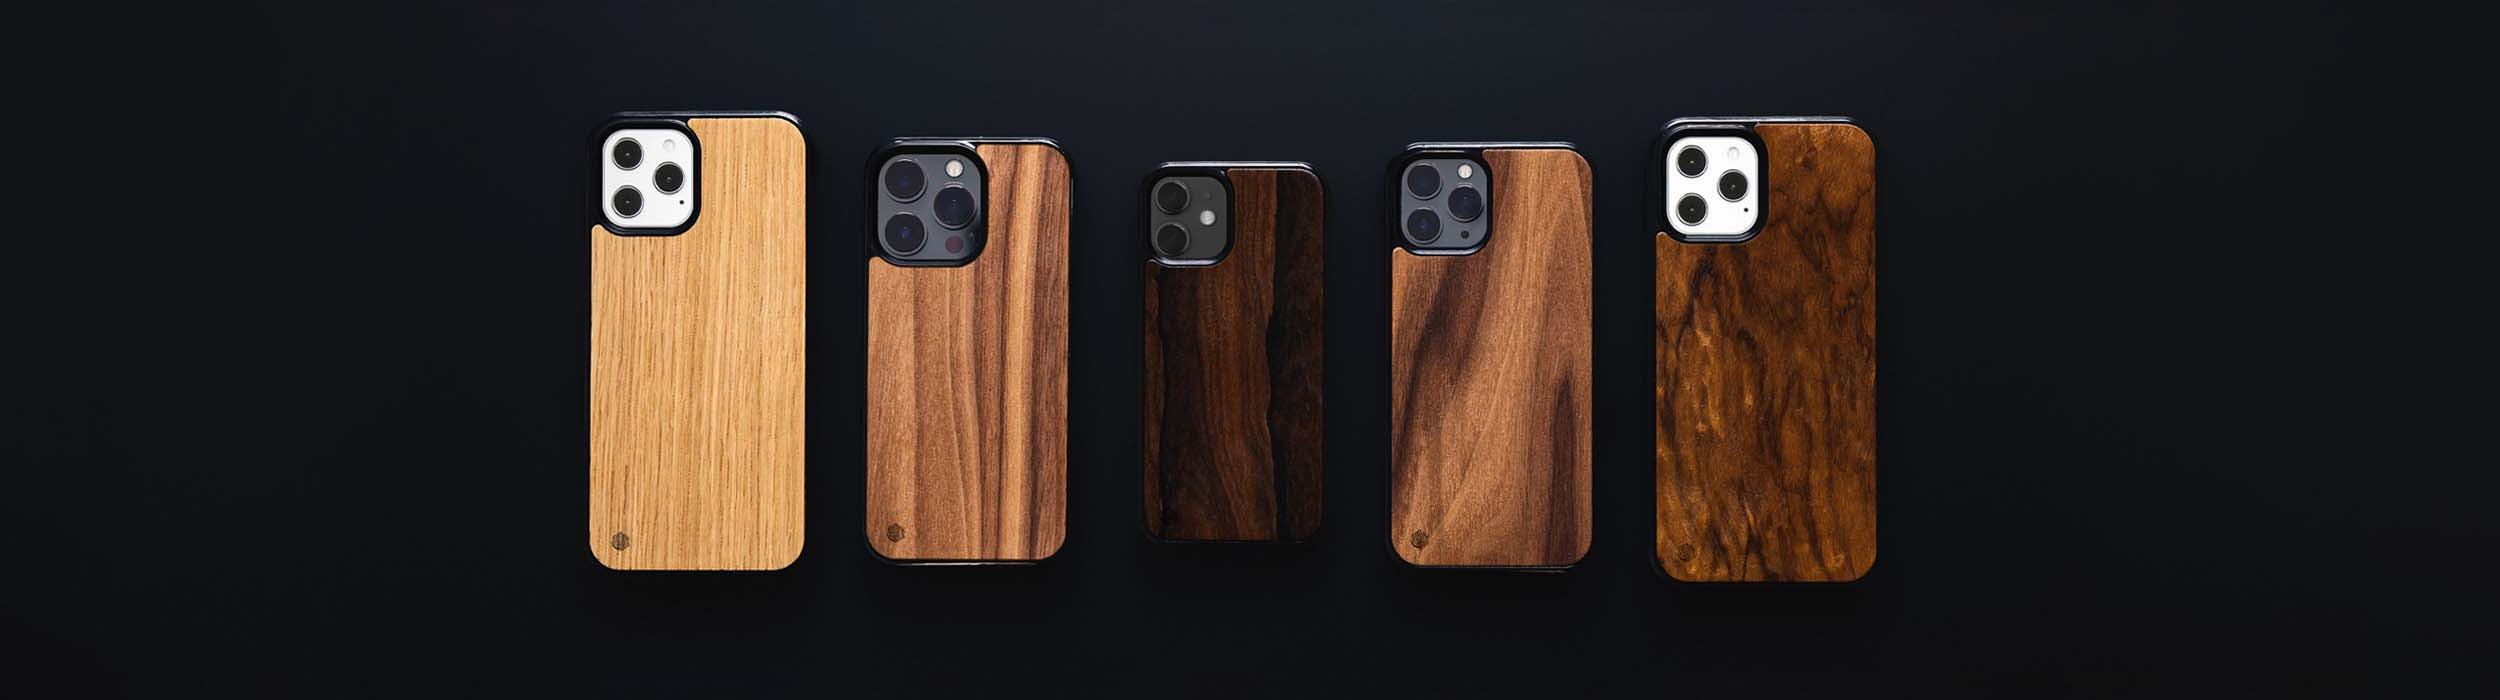 Apple iPhone 12 Handyhüllen aus Holz